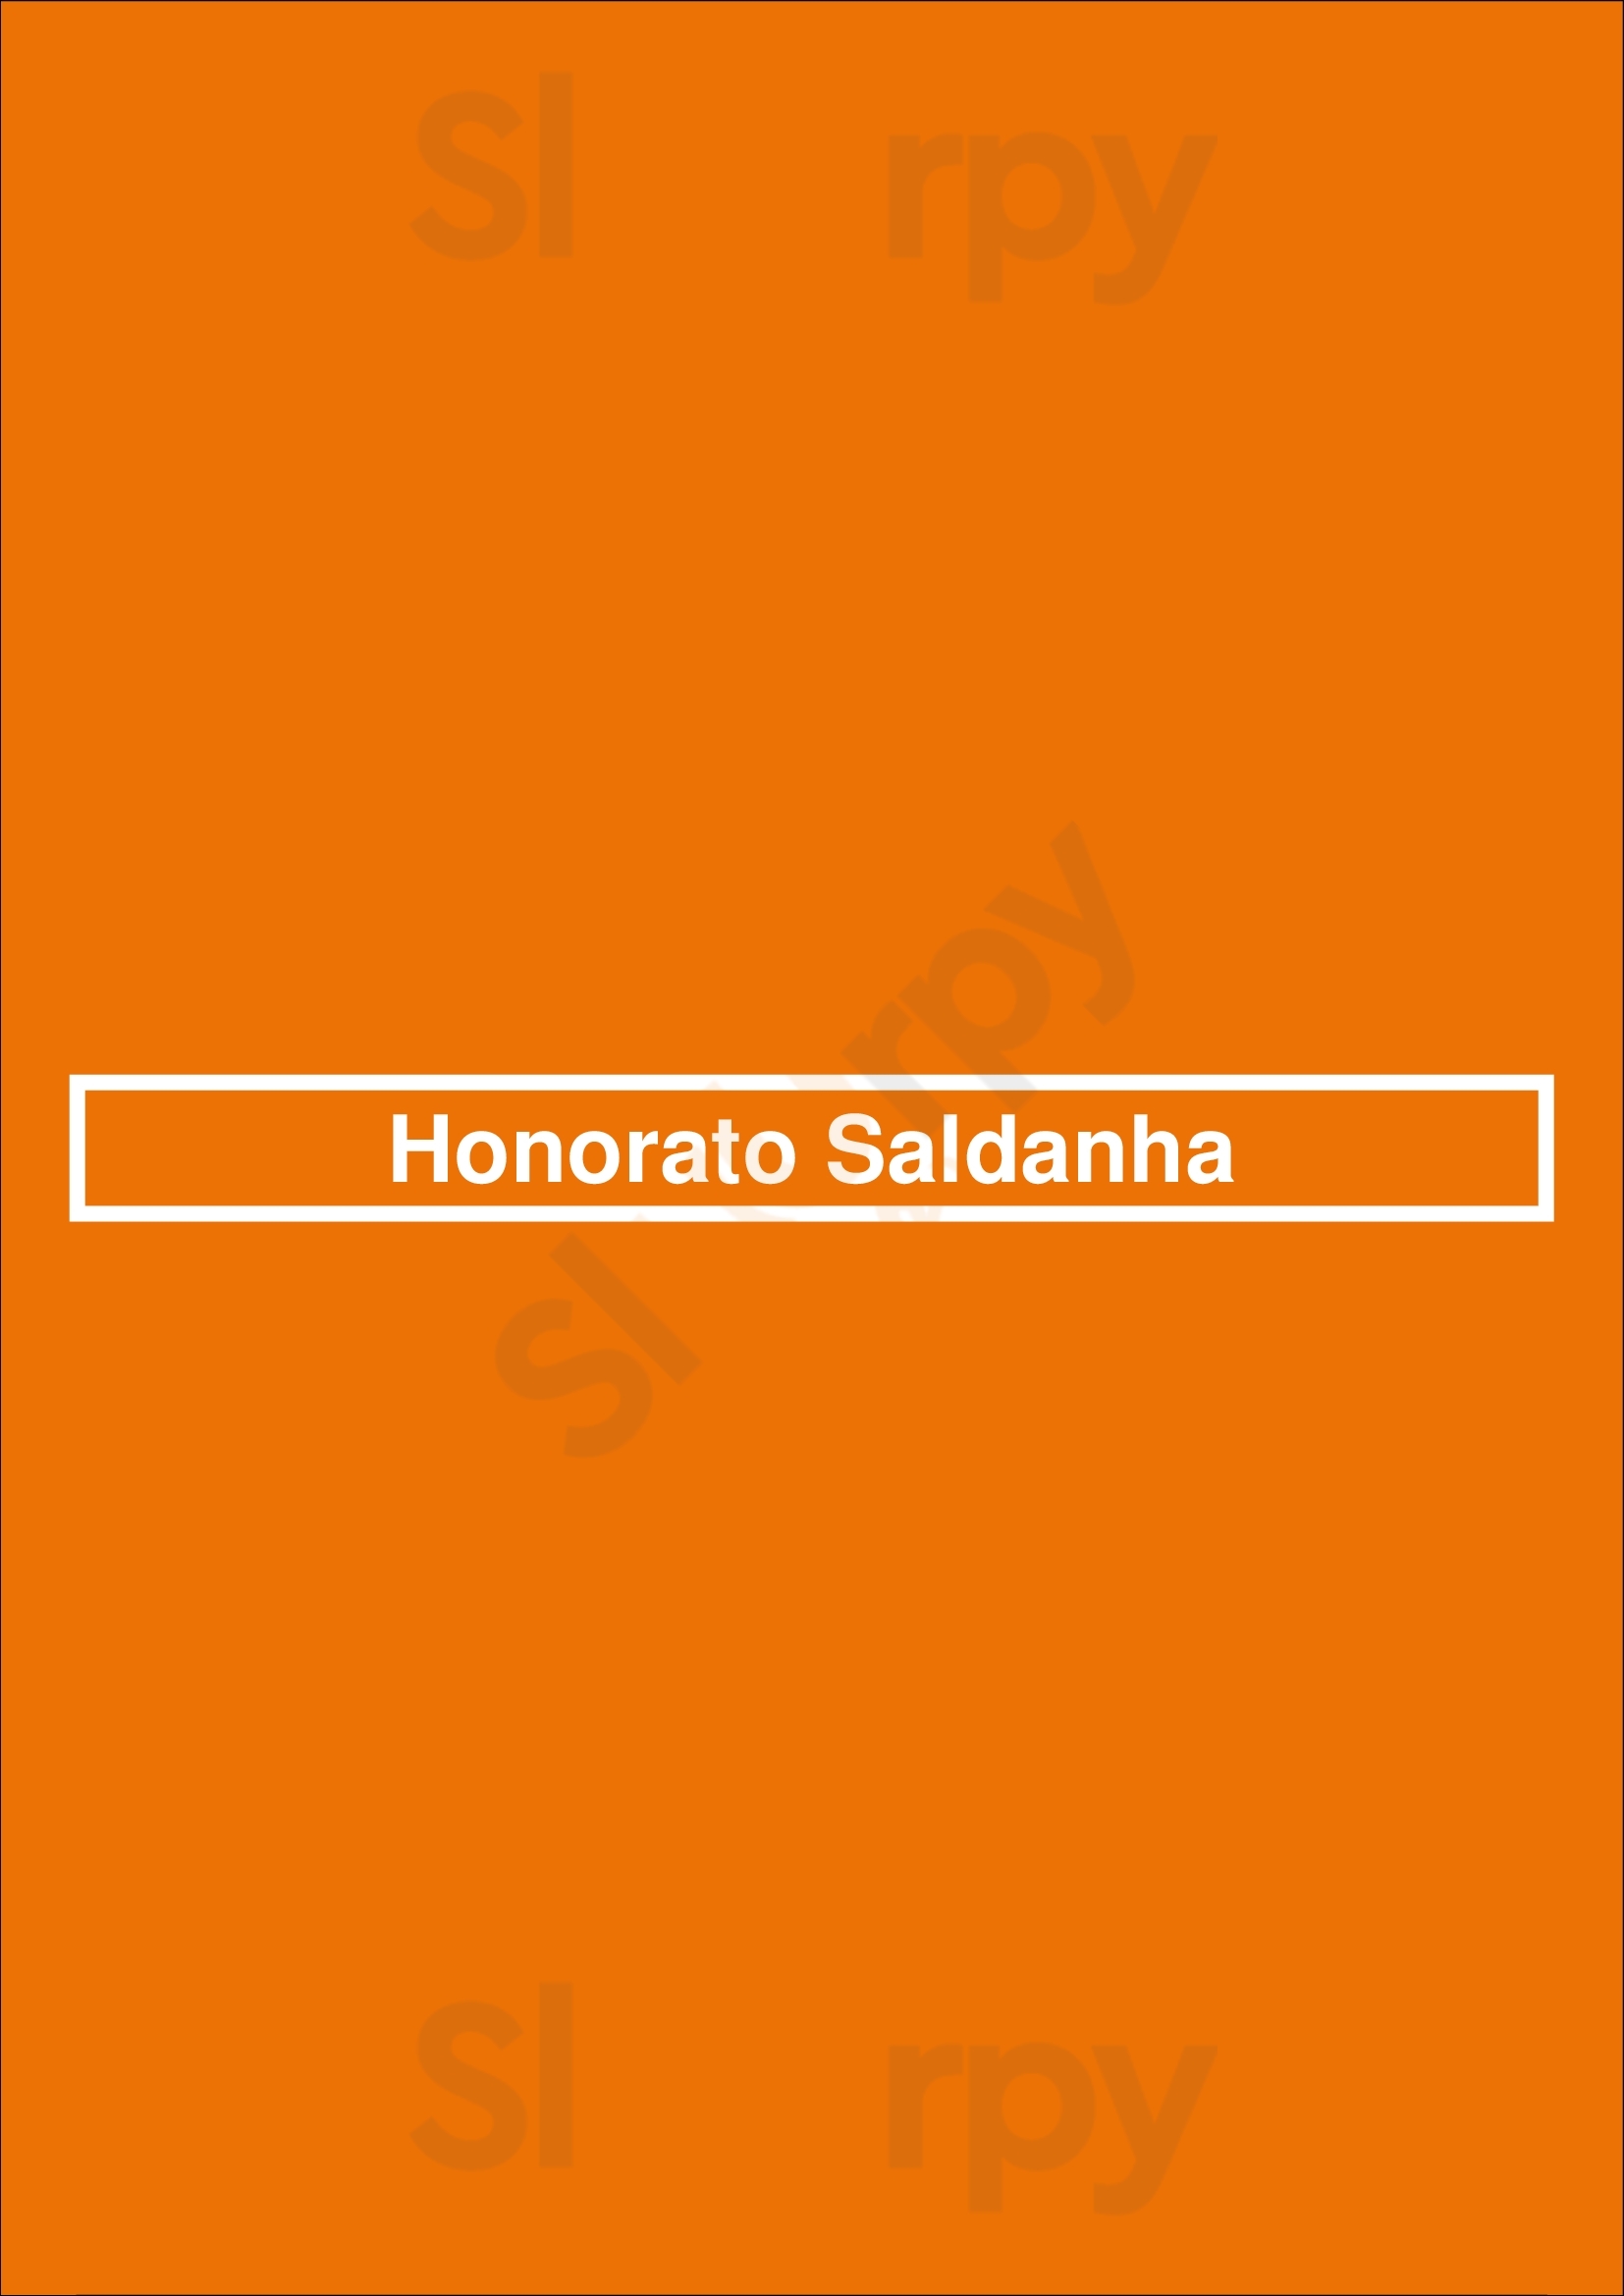 Honorato Saldanha Lisboa Menu - 1